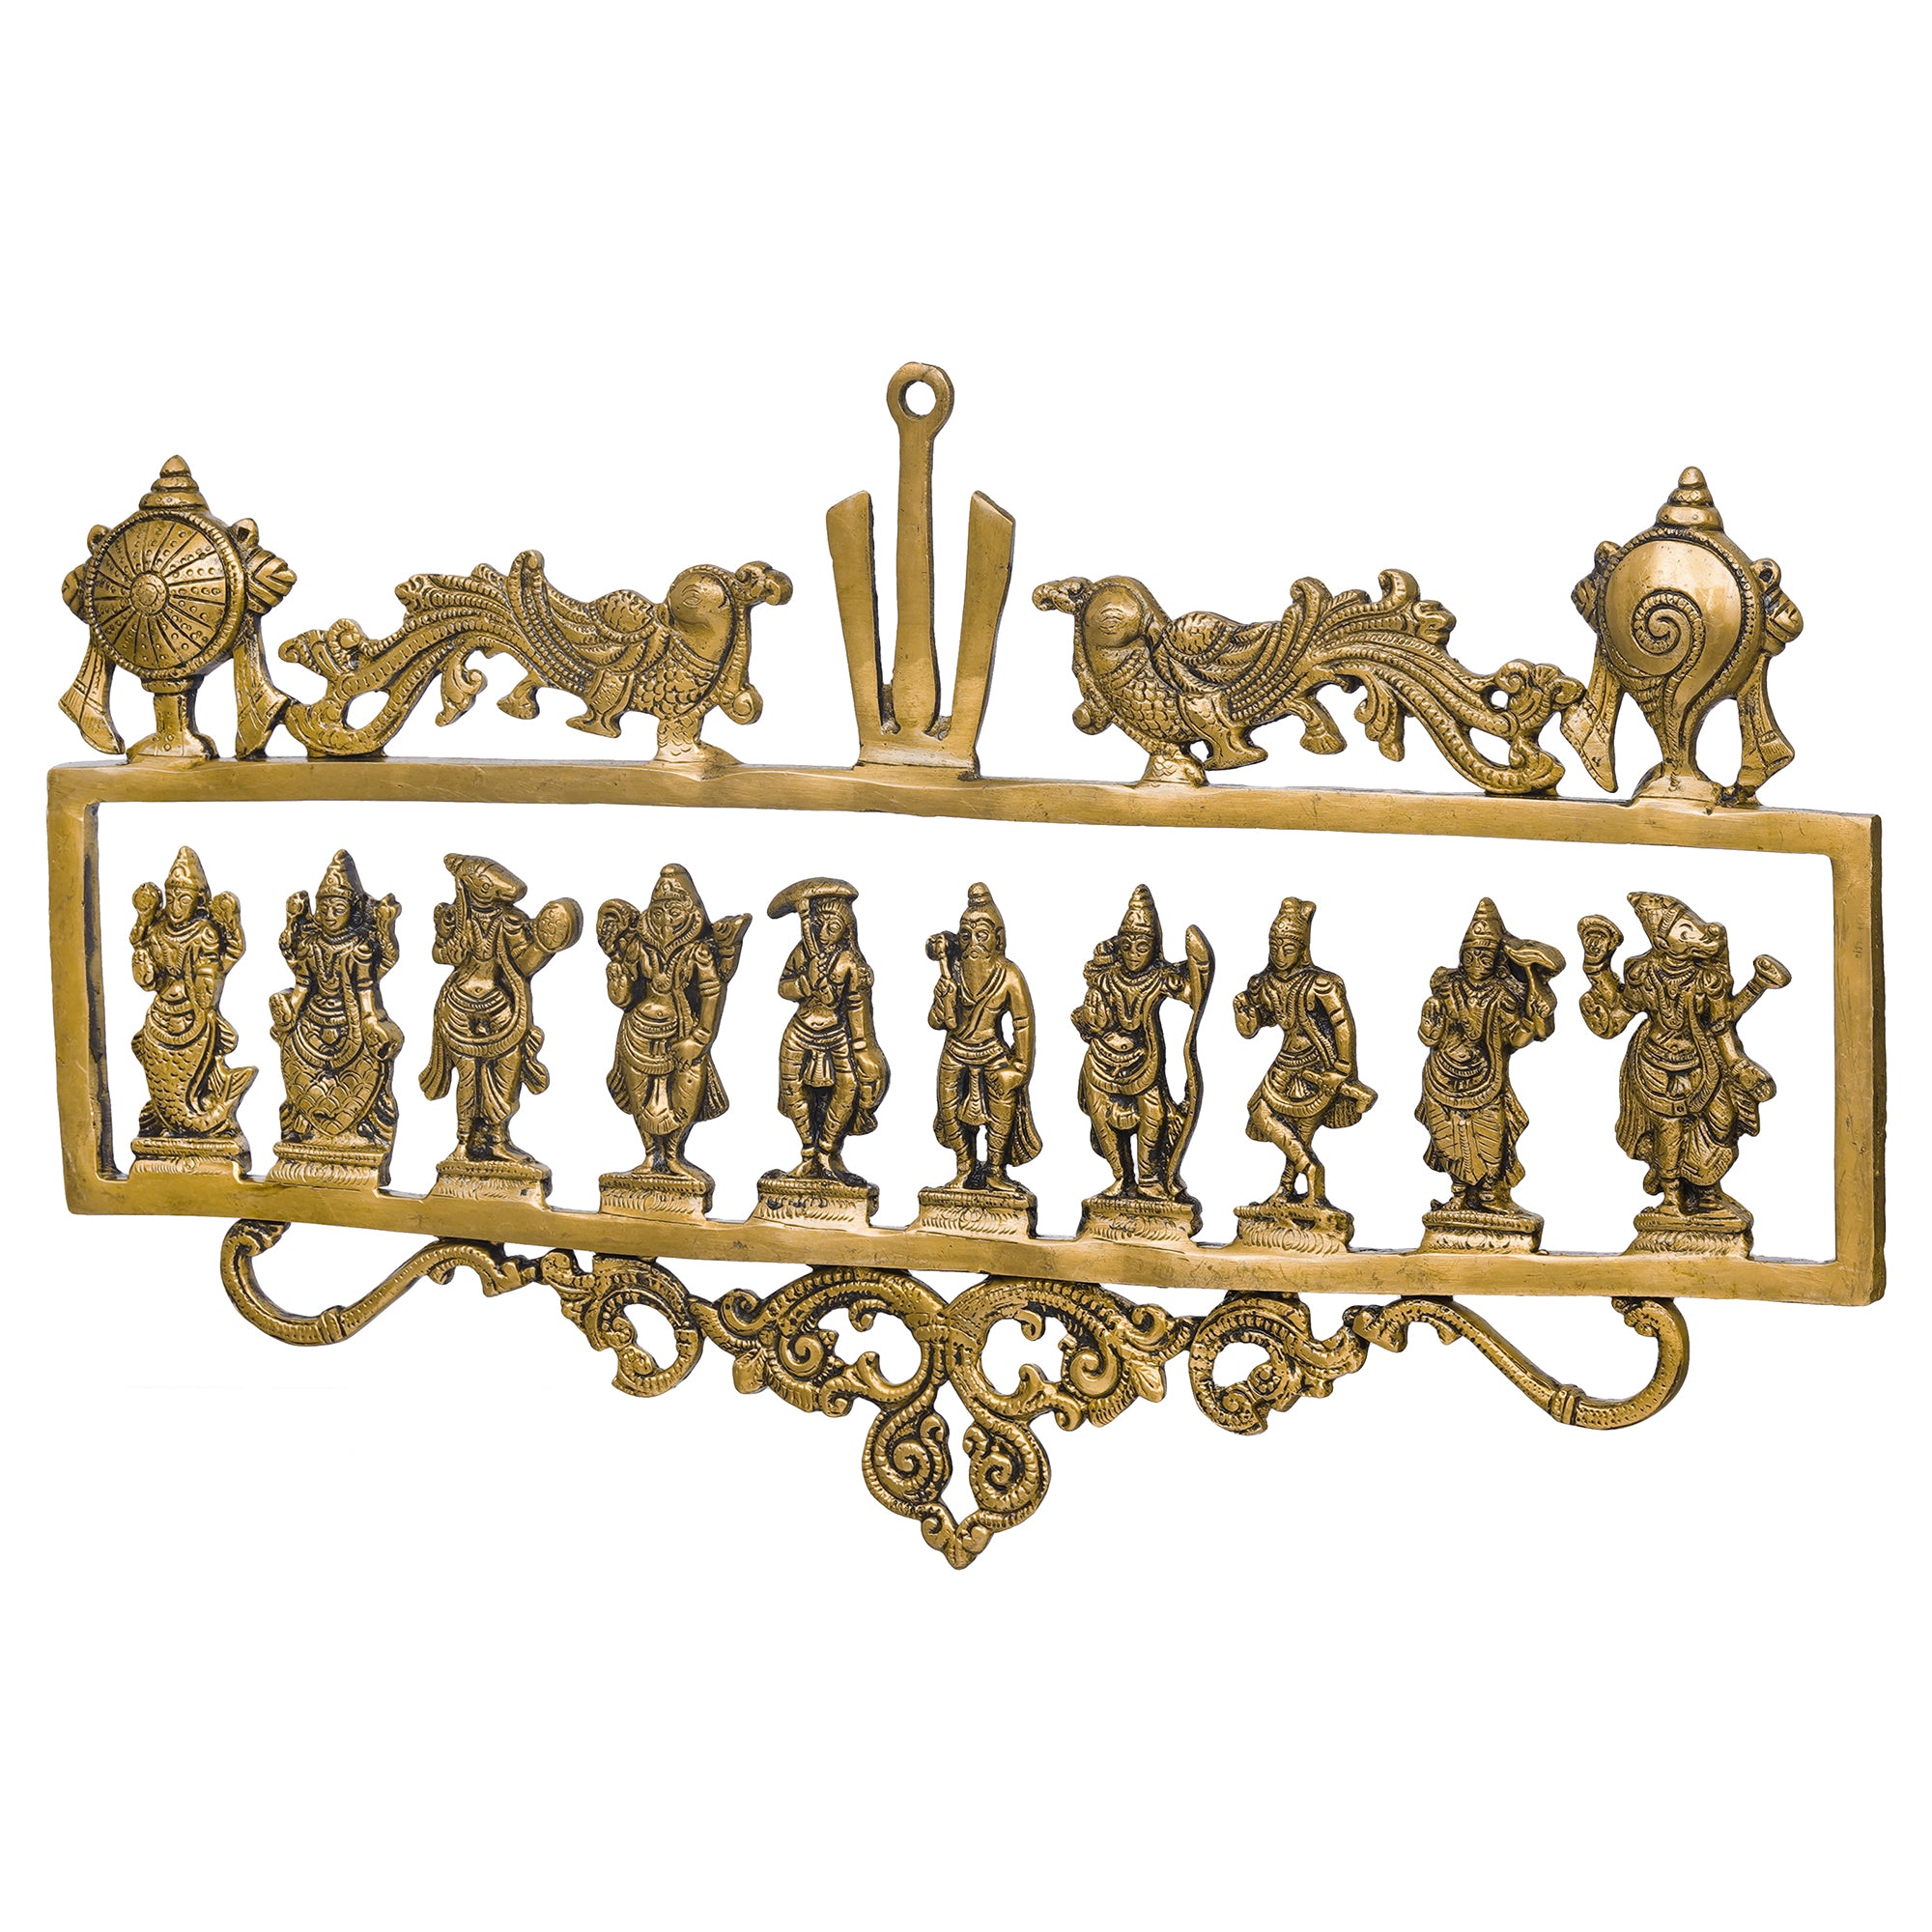 eCraftIndia Golden Brass Vishnu Dashavatara - Ten Incarnations of Lord Vishnu Religious Wall Hanging 7